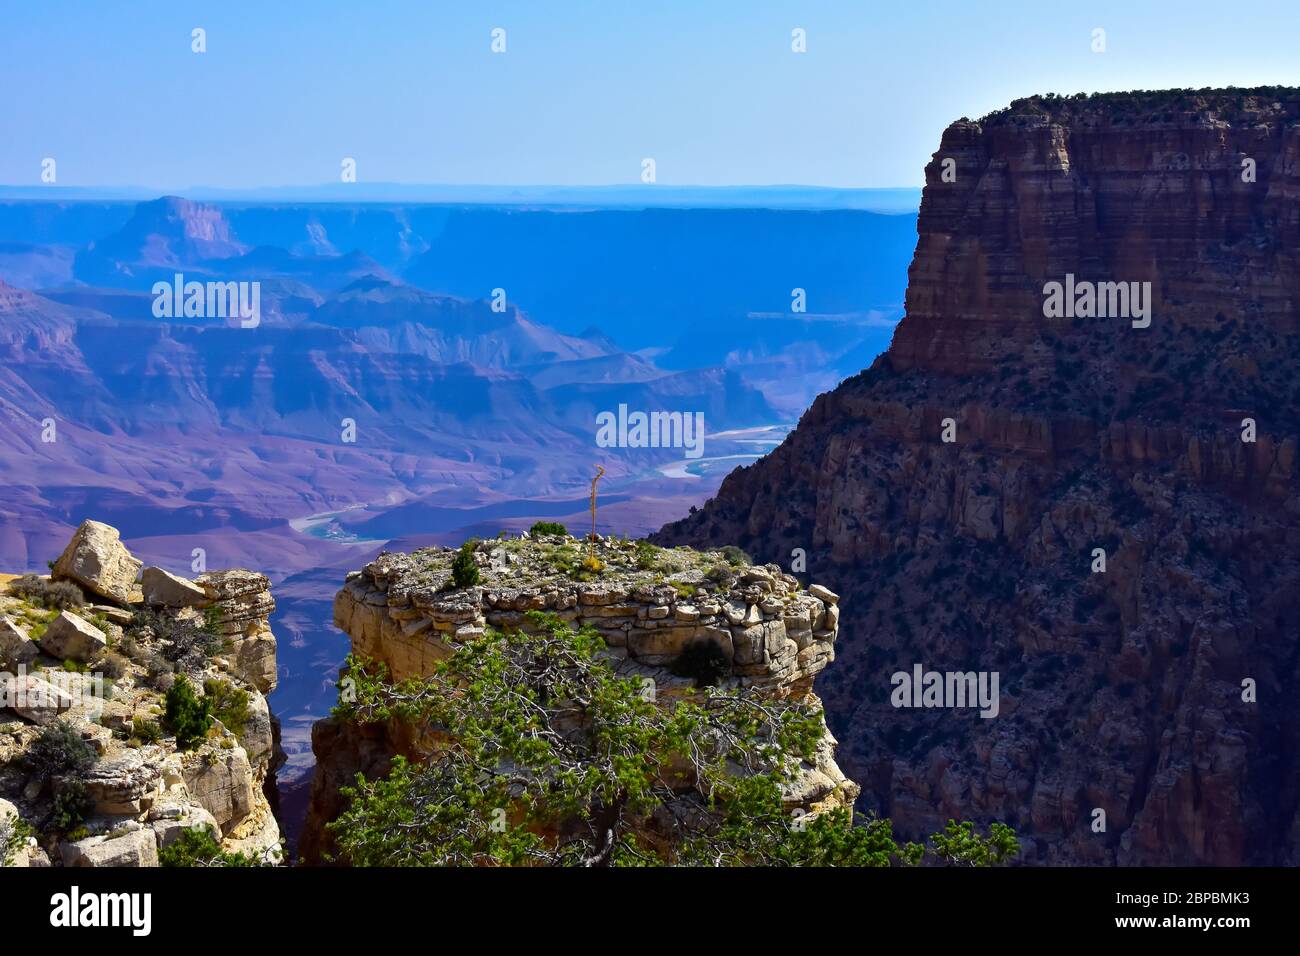 Splendida vista colorata sul bordo sud del Grand Canyon in Arizona. In lontananza, è possibile vedere il fiume colorado sul fondo del canyon. Foto Stock